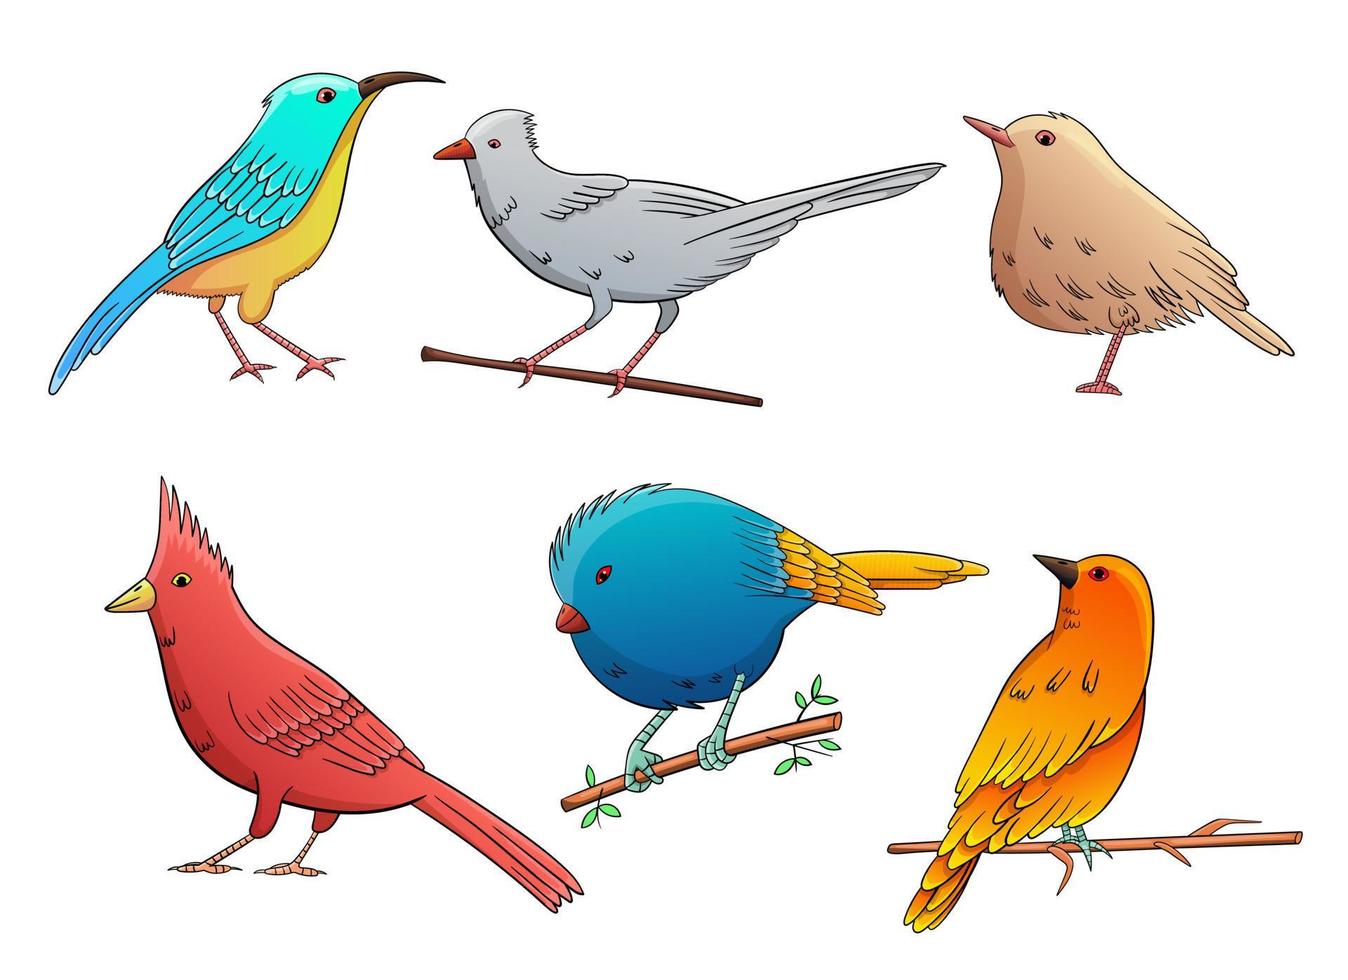 vogels stellen vectorontwerpillustratie in die op witte achtergrond wordt geïsoleerd vector